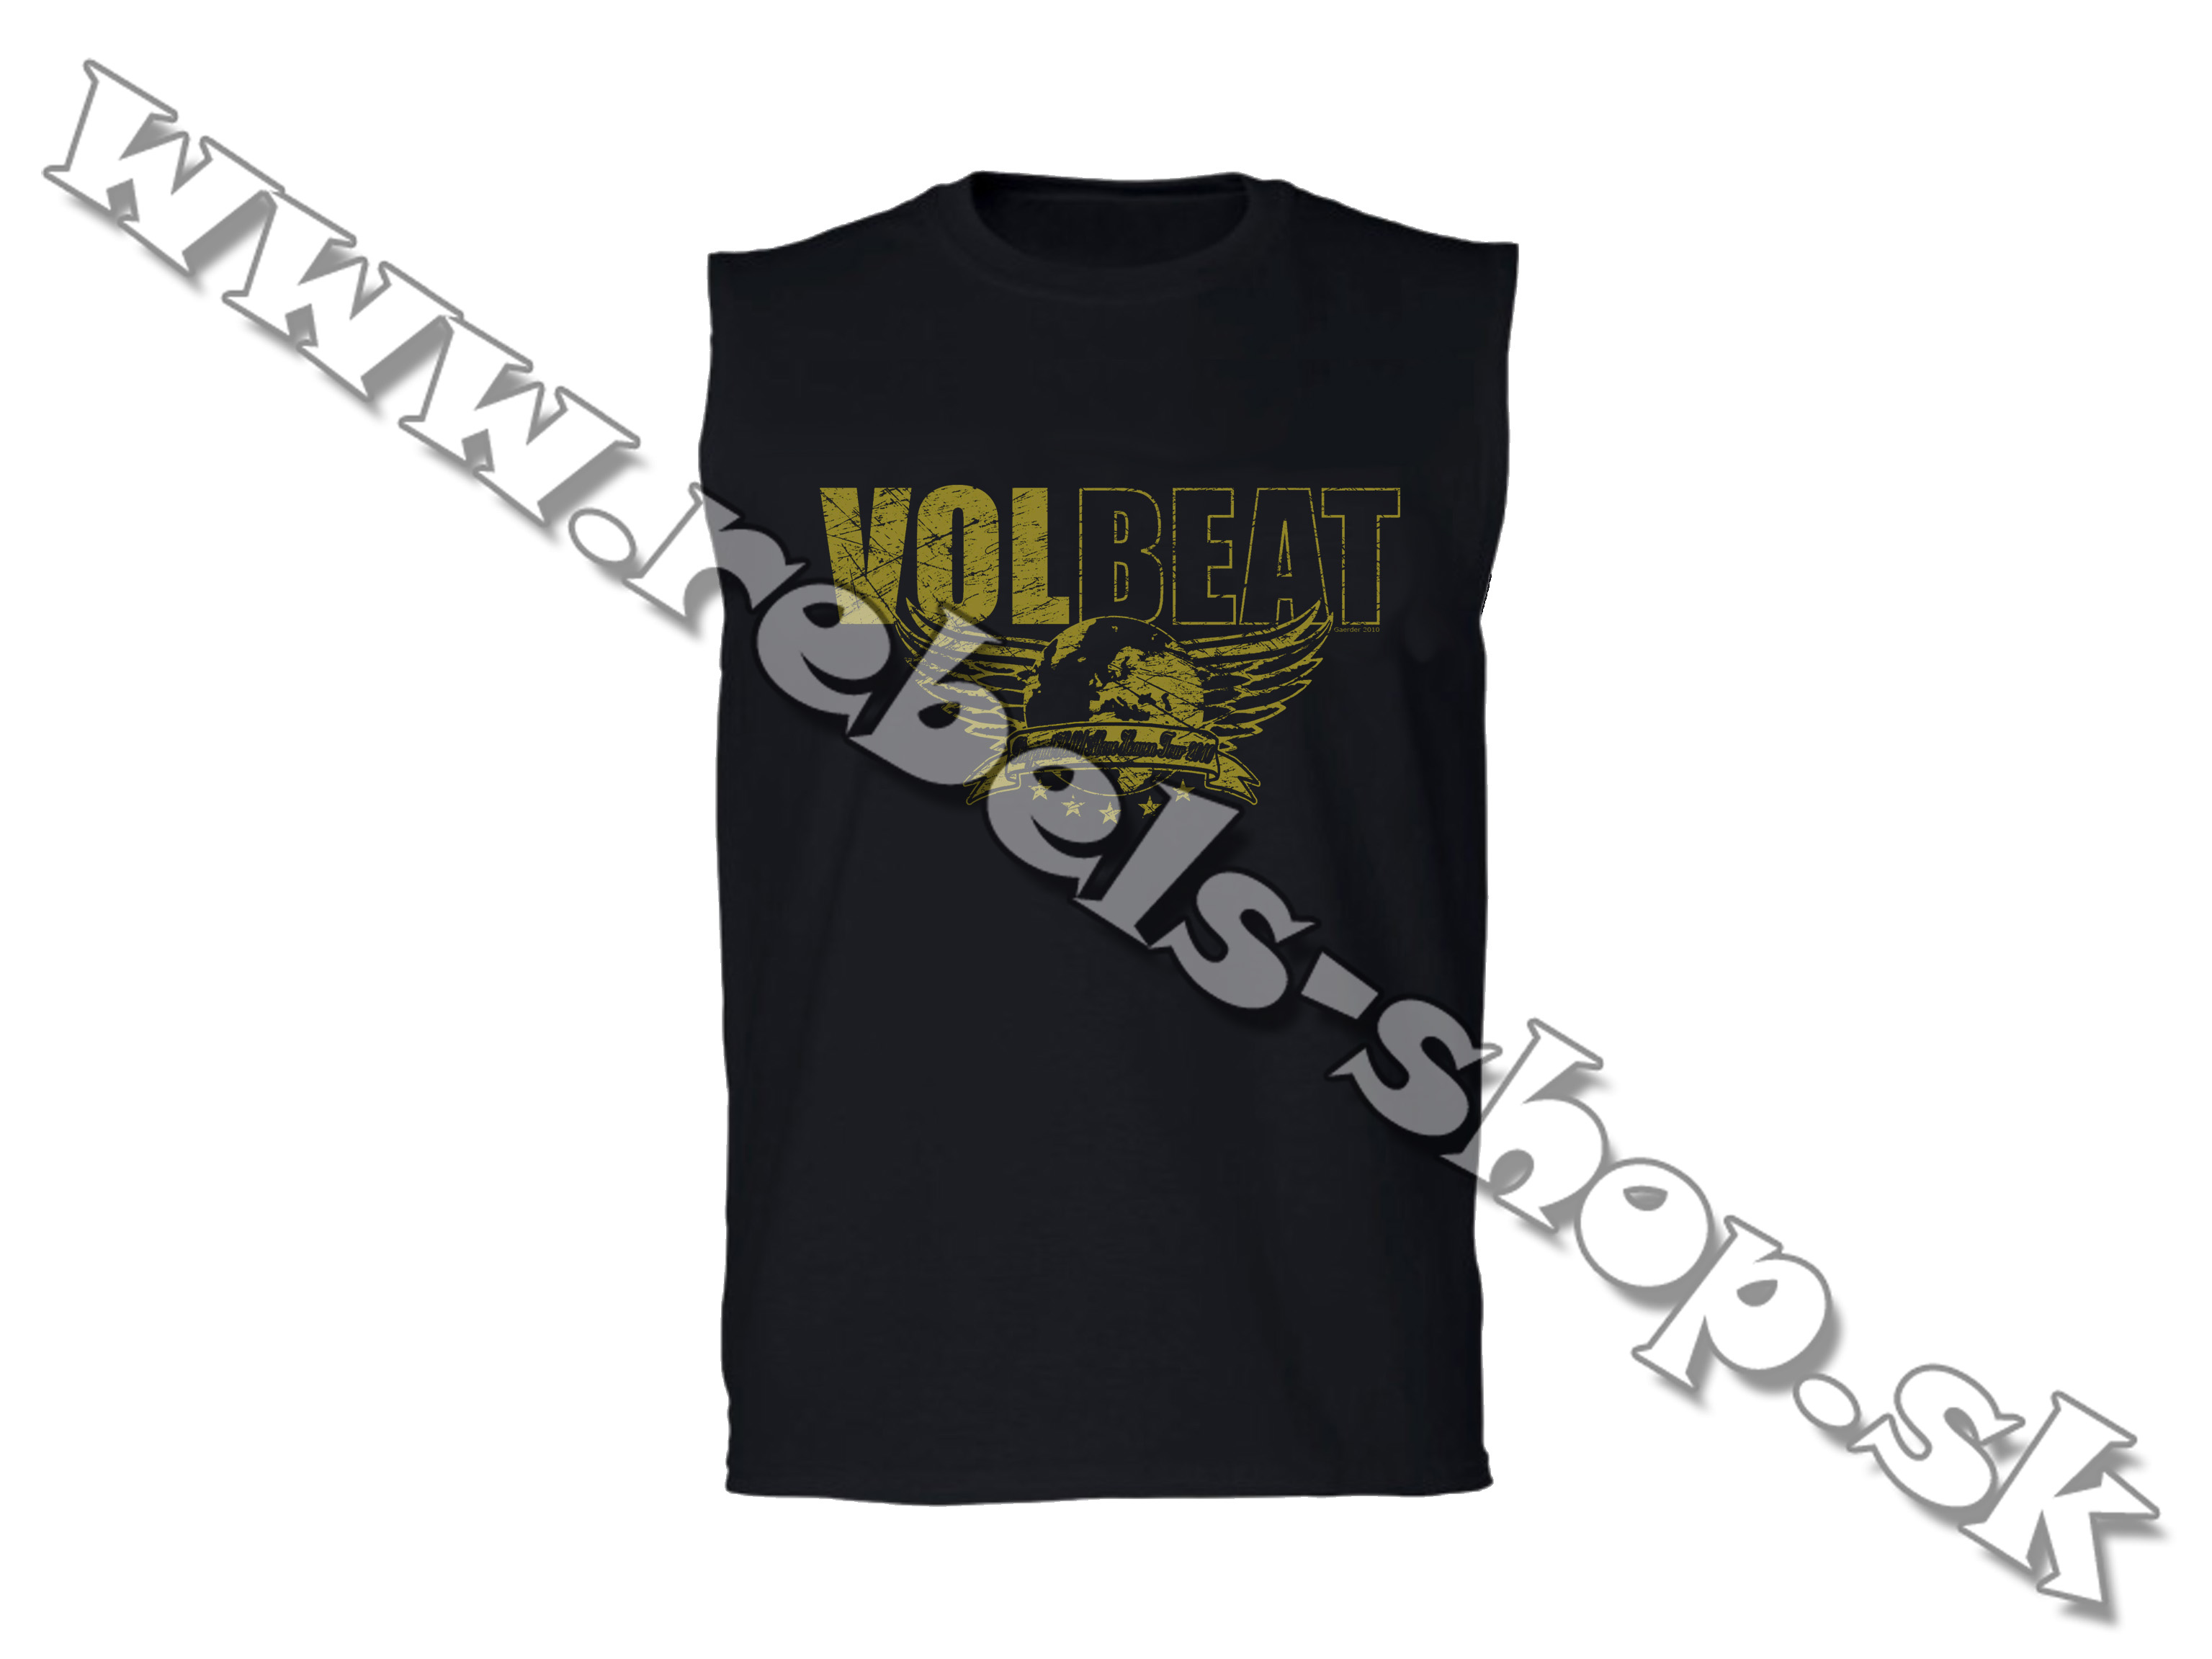 Tričko "Volbeat"